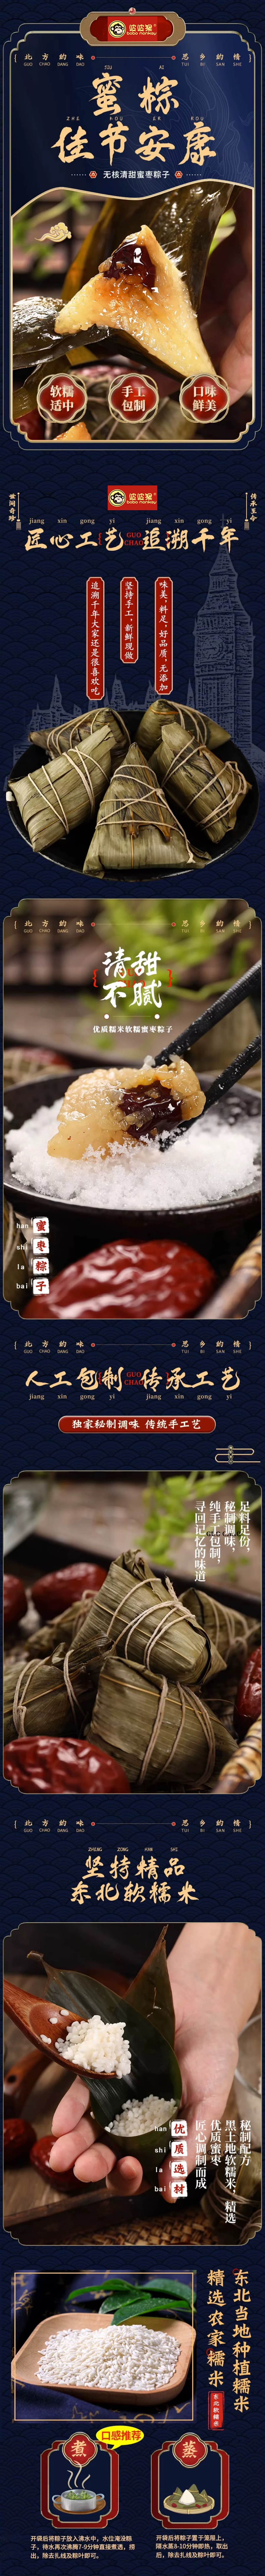 波波猴 “最新上新口感绝佳”红袍豆沙粽子 2枚 240g端午前最好吃